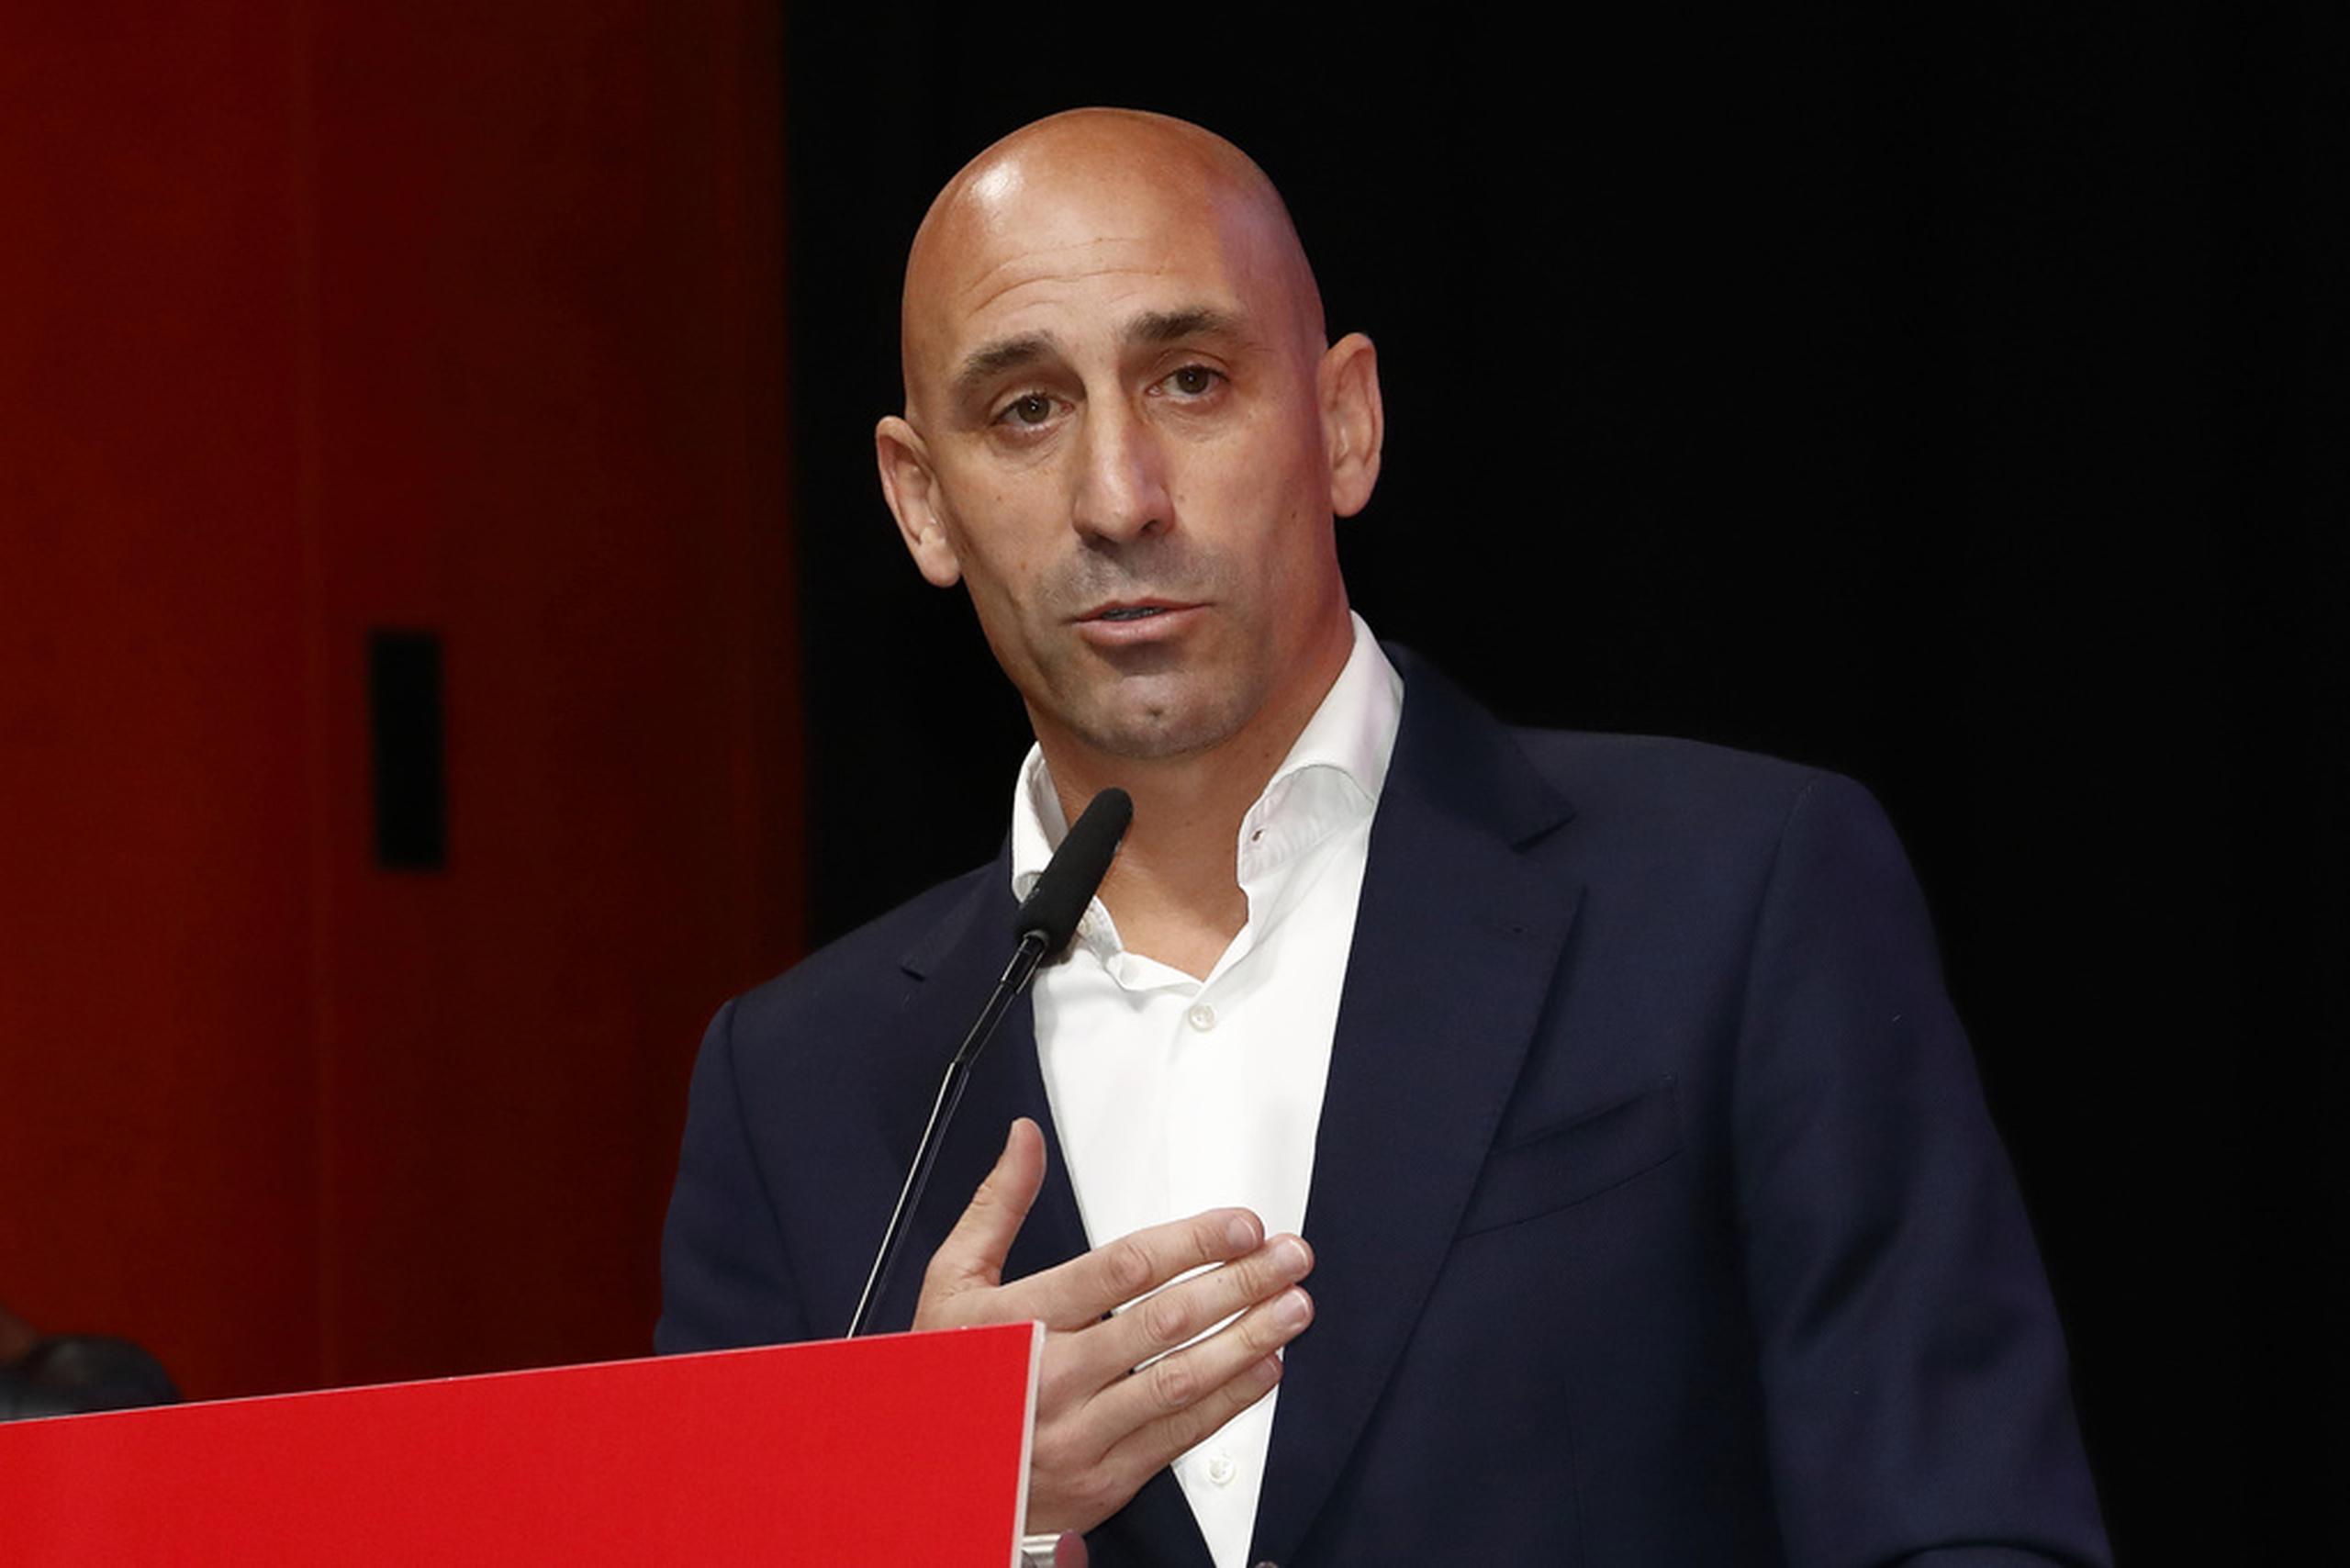 El presidente de la Real Federación Española de Fútbol fue suspendido por 90 días de su cargo y está acusado de agresión sexual.